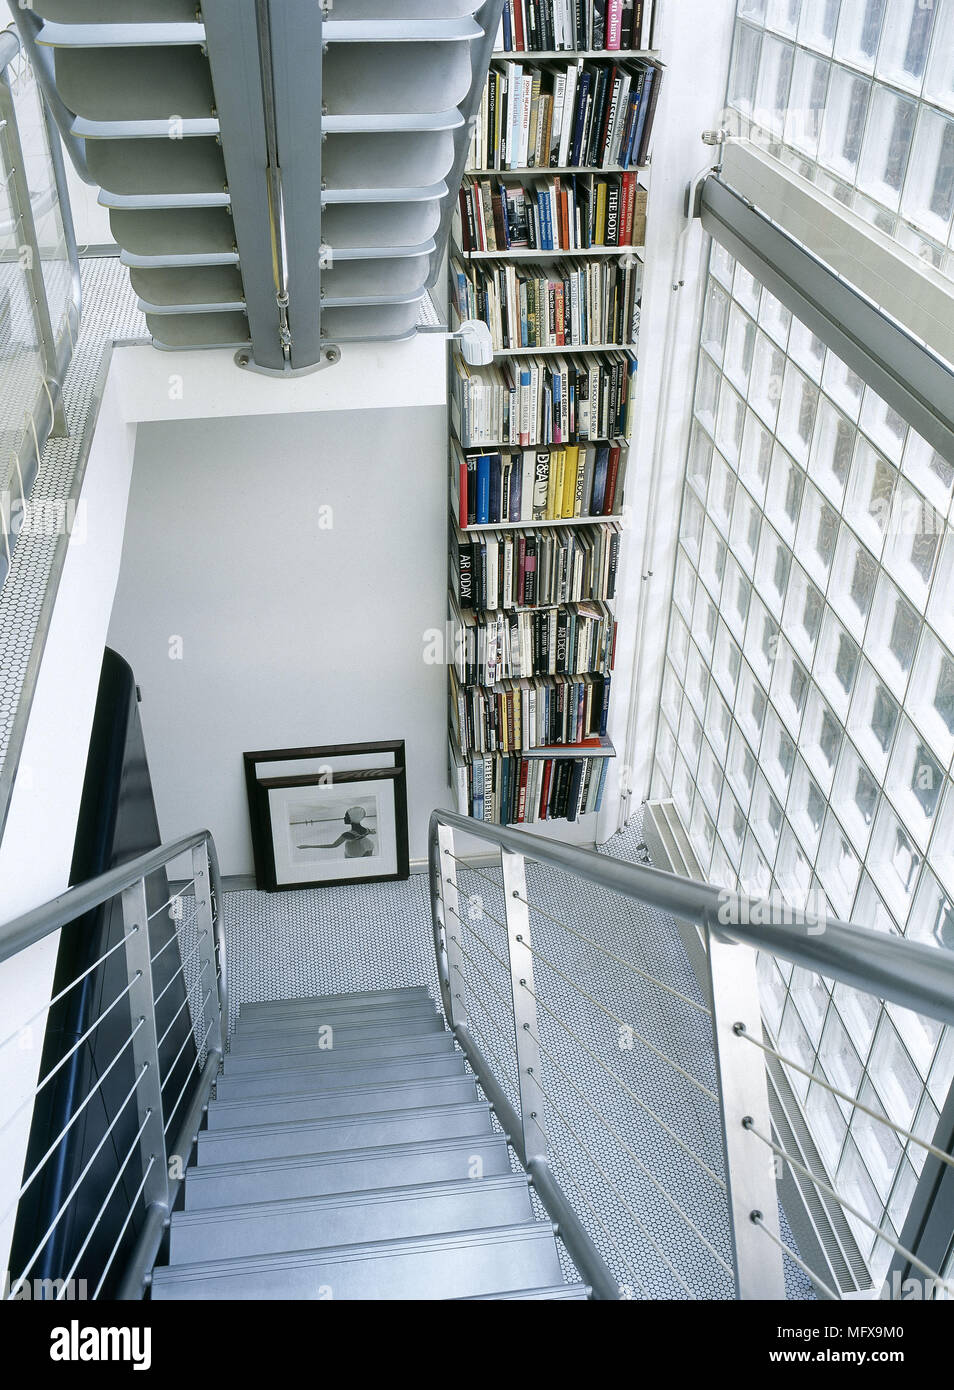 Moderne Treppe mit Bücherregal und Glas brick wall Stockfotografie - Alamy